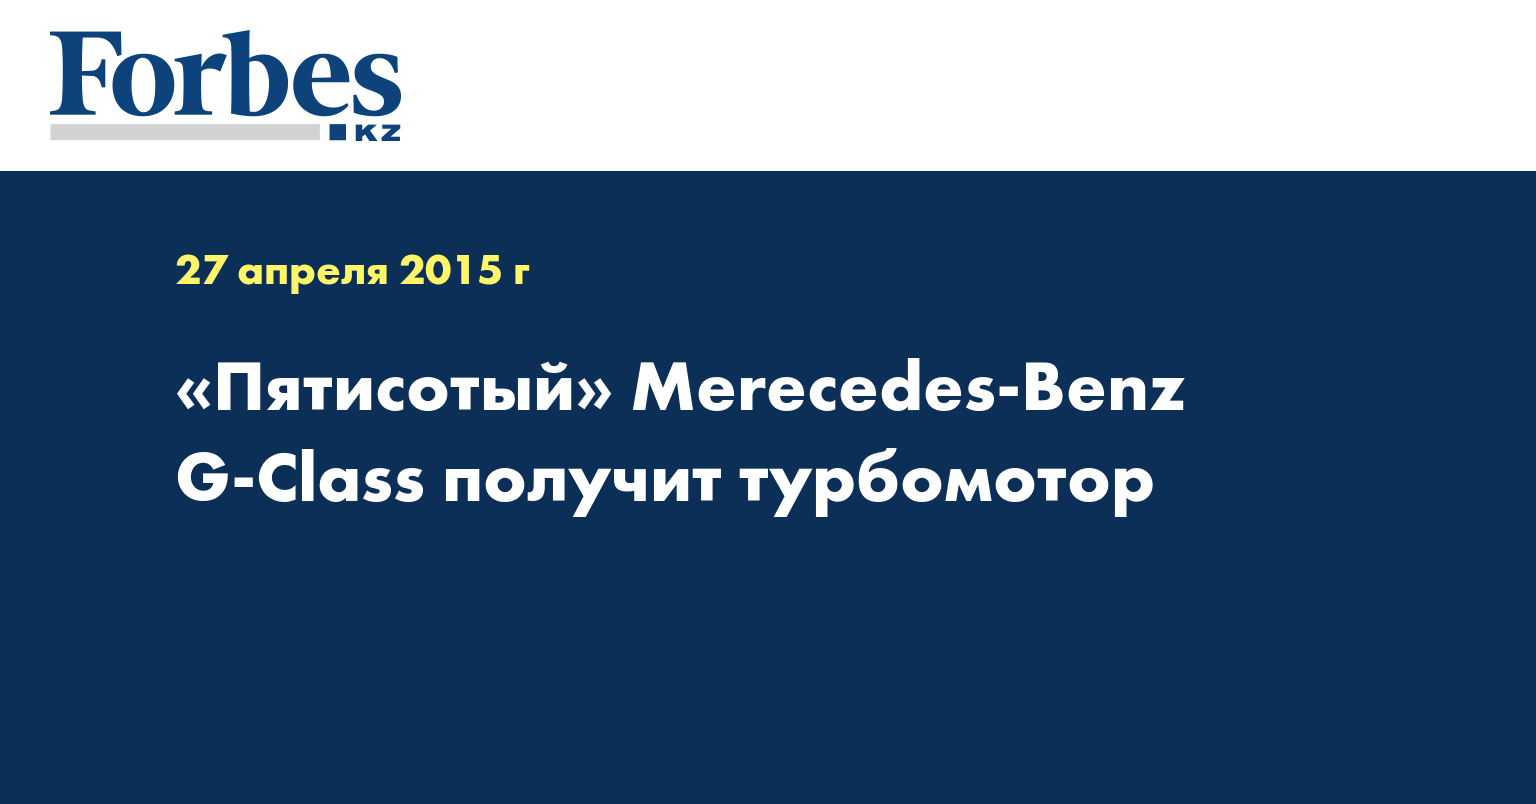 «Пятисотый» Merecedes-Benz G-Class получит турбомотор